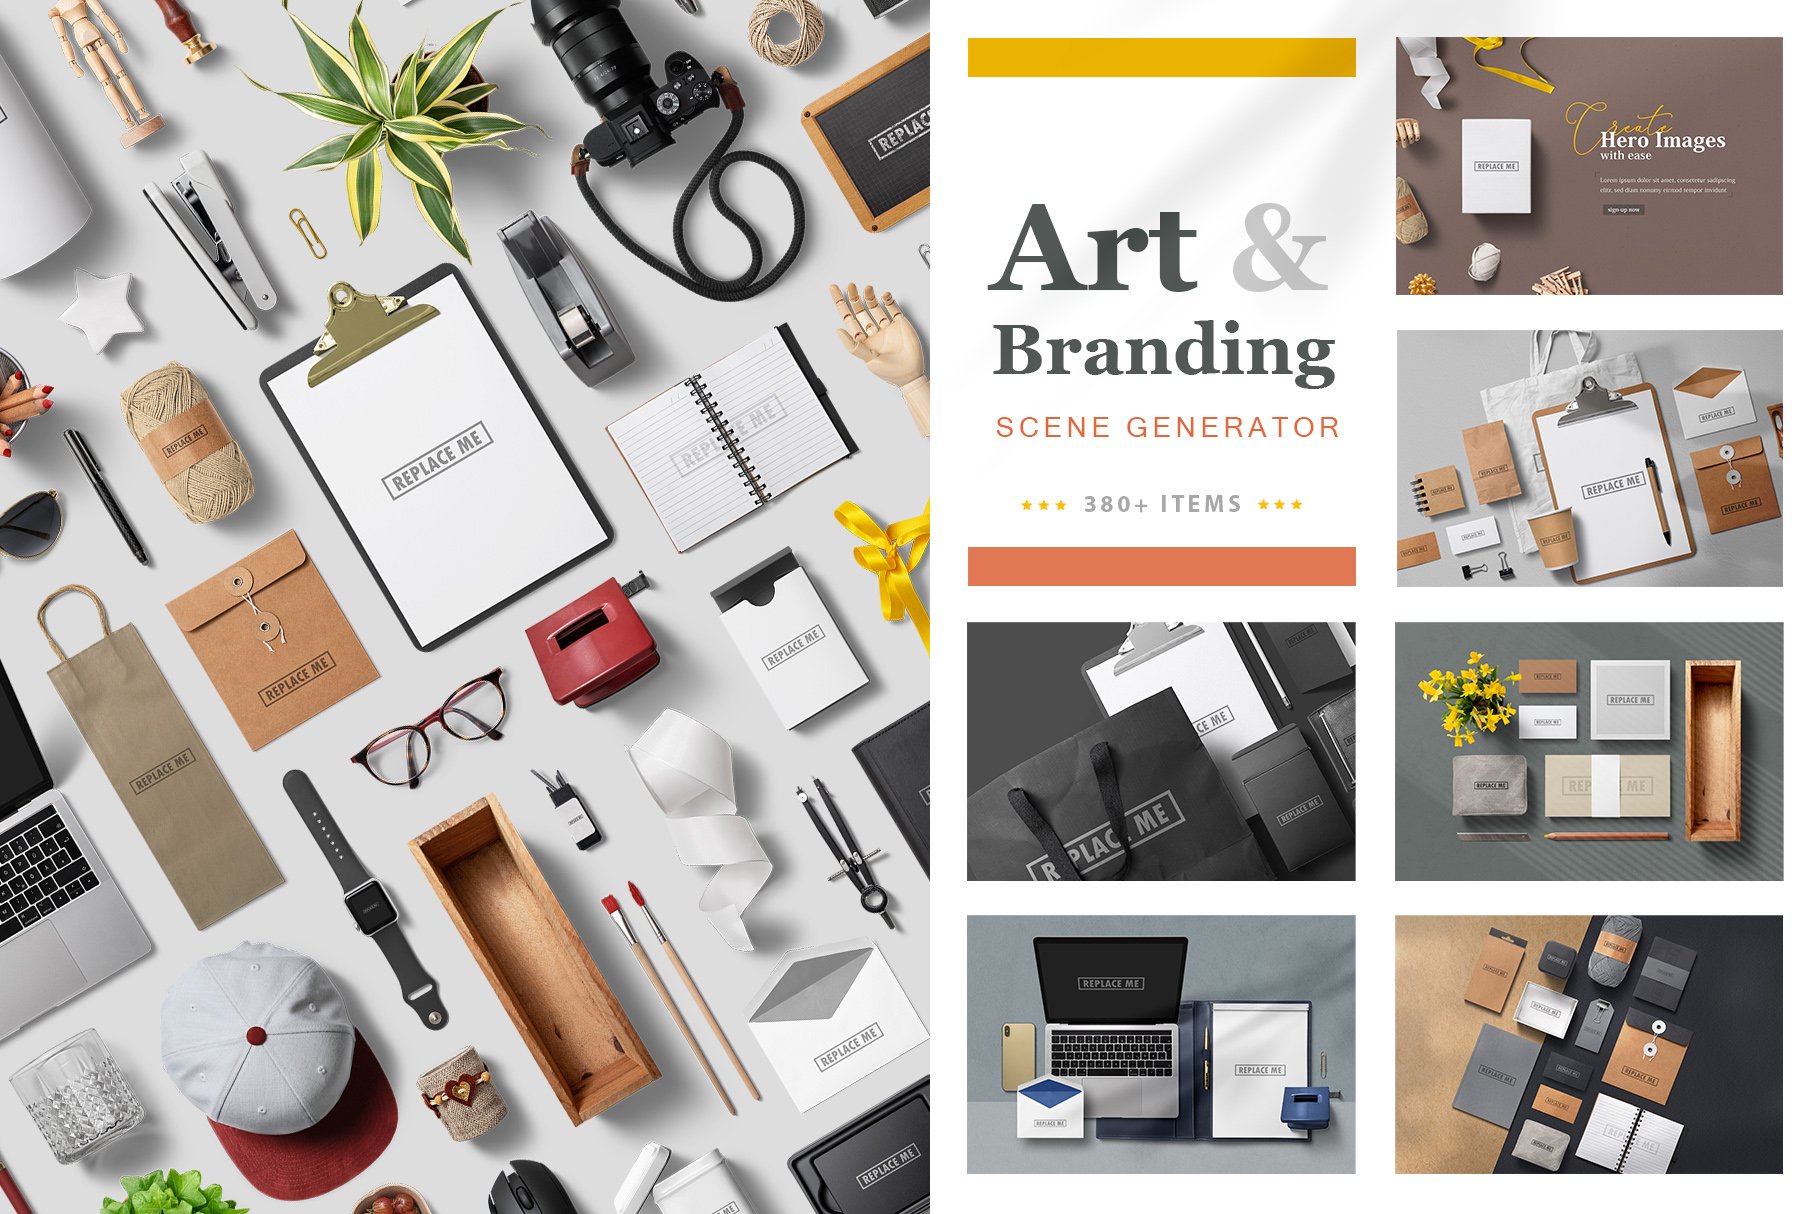 Art & Branding Scene Generator cover image.